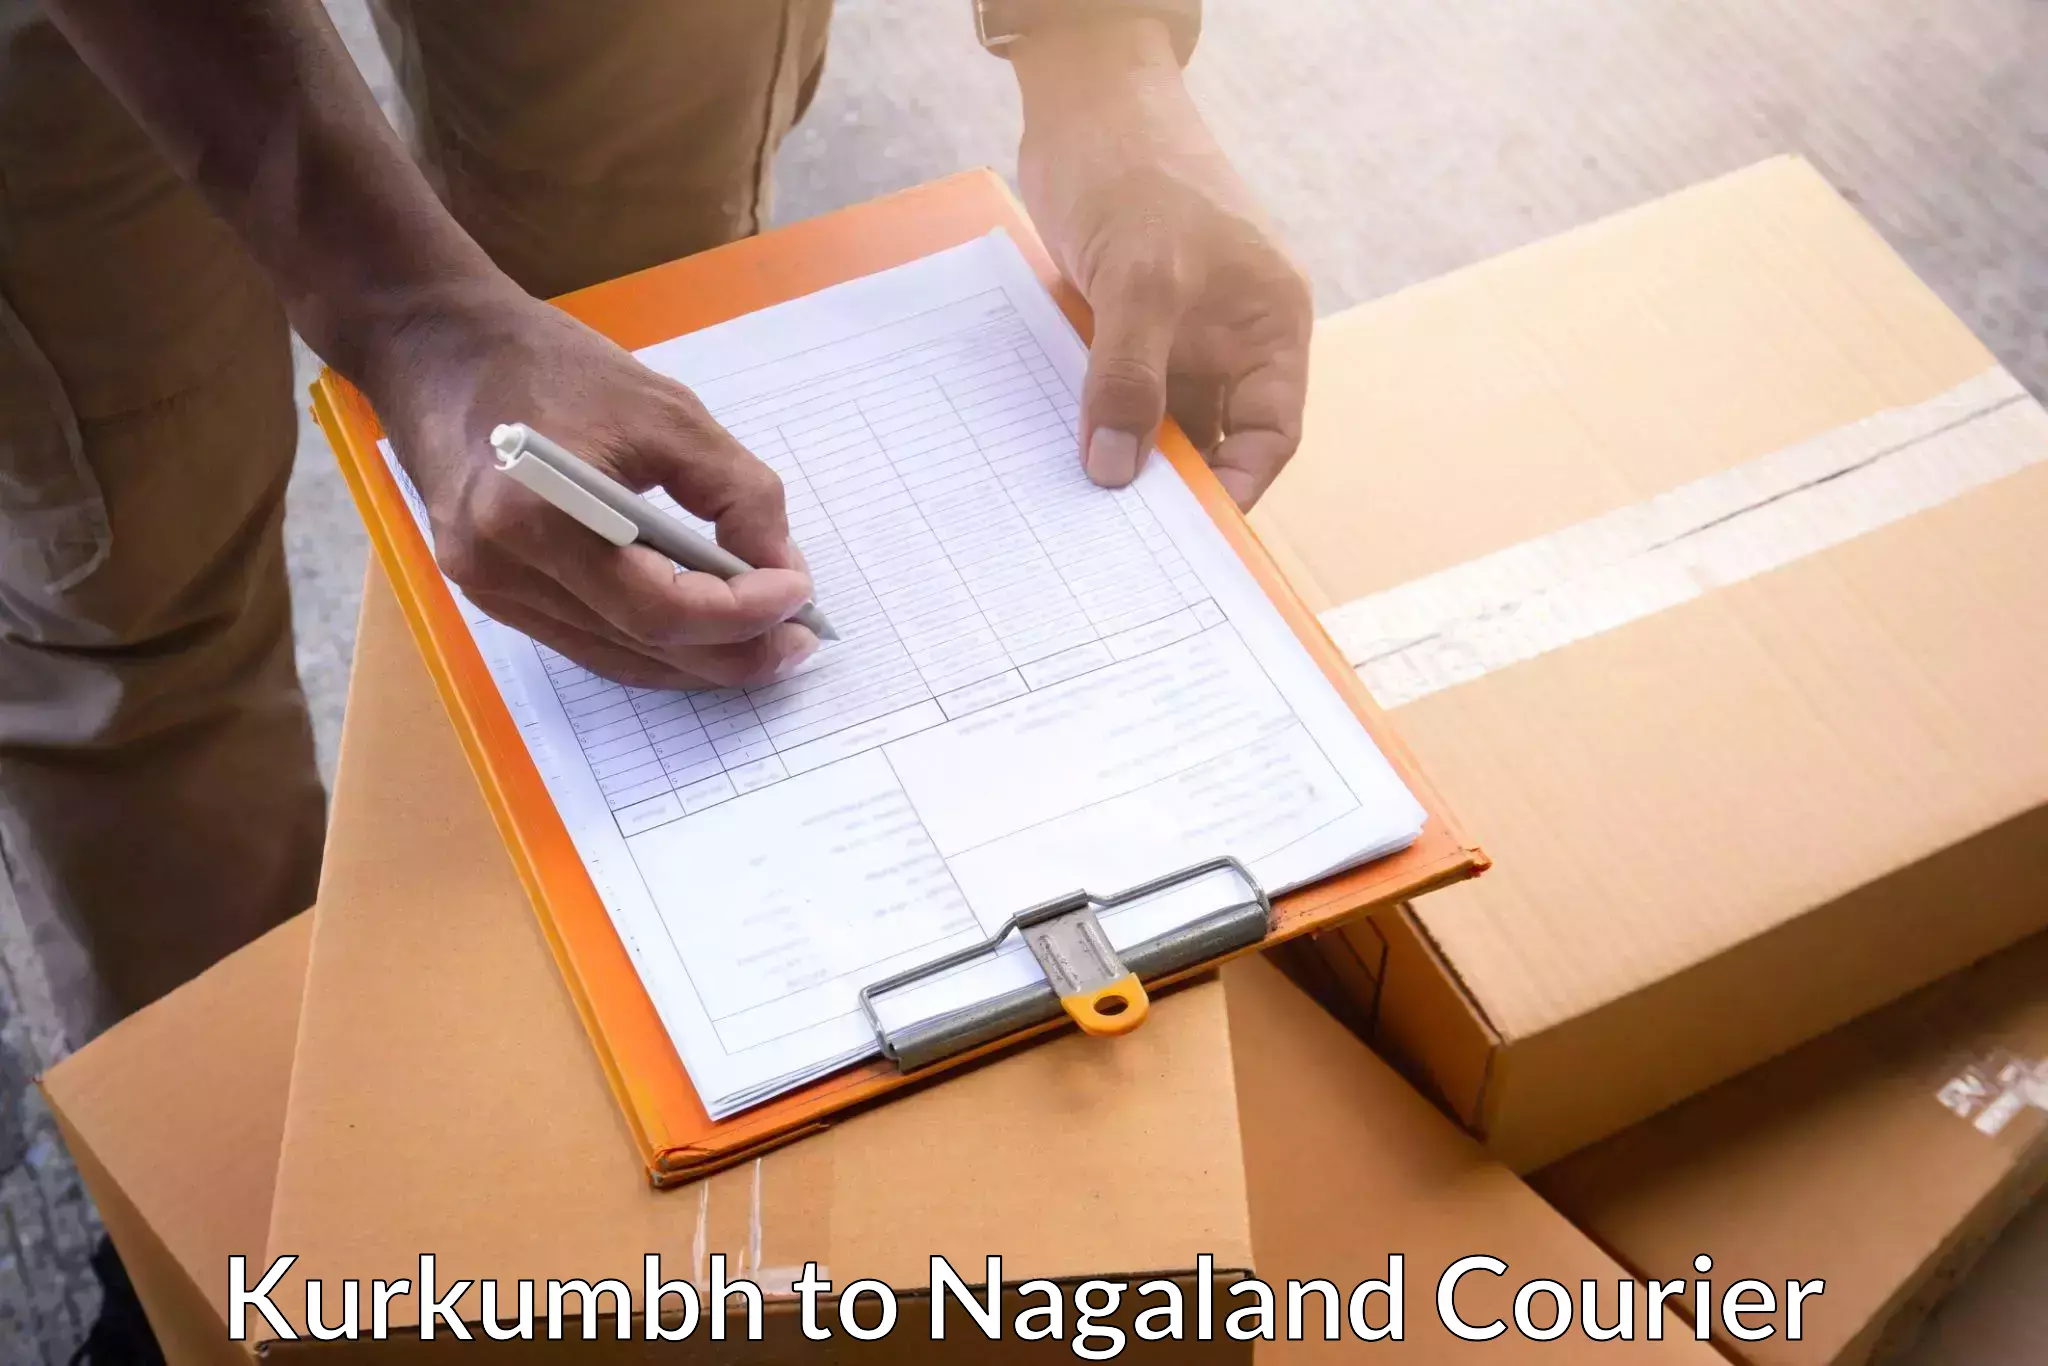 Cost-effective courier solutions Kurkumbh to Chumukedima